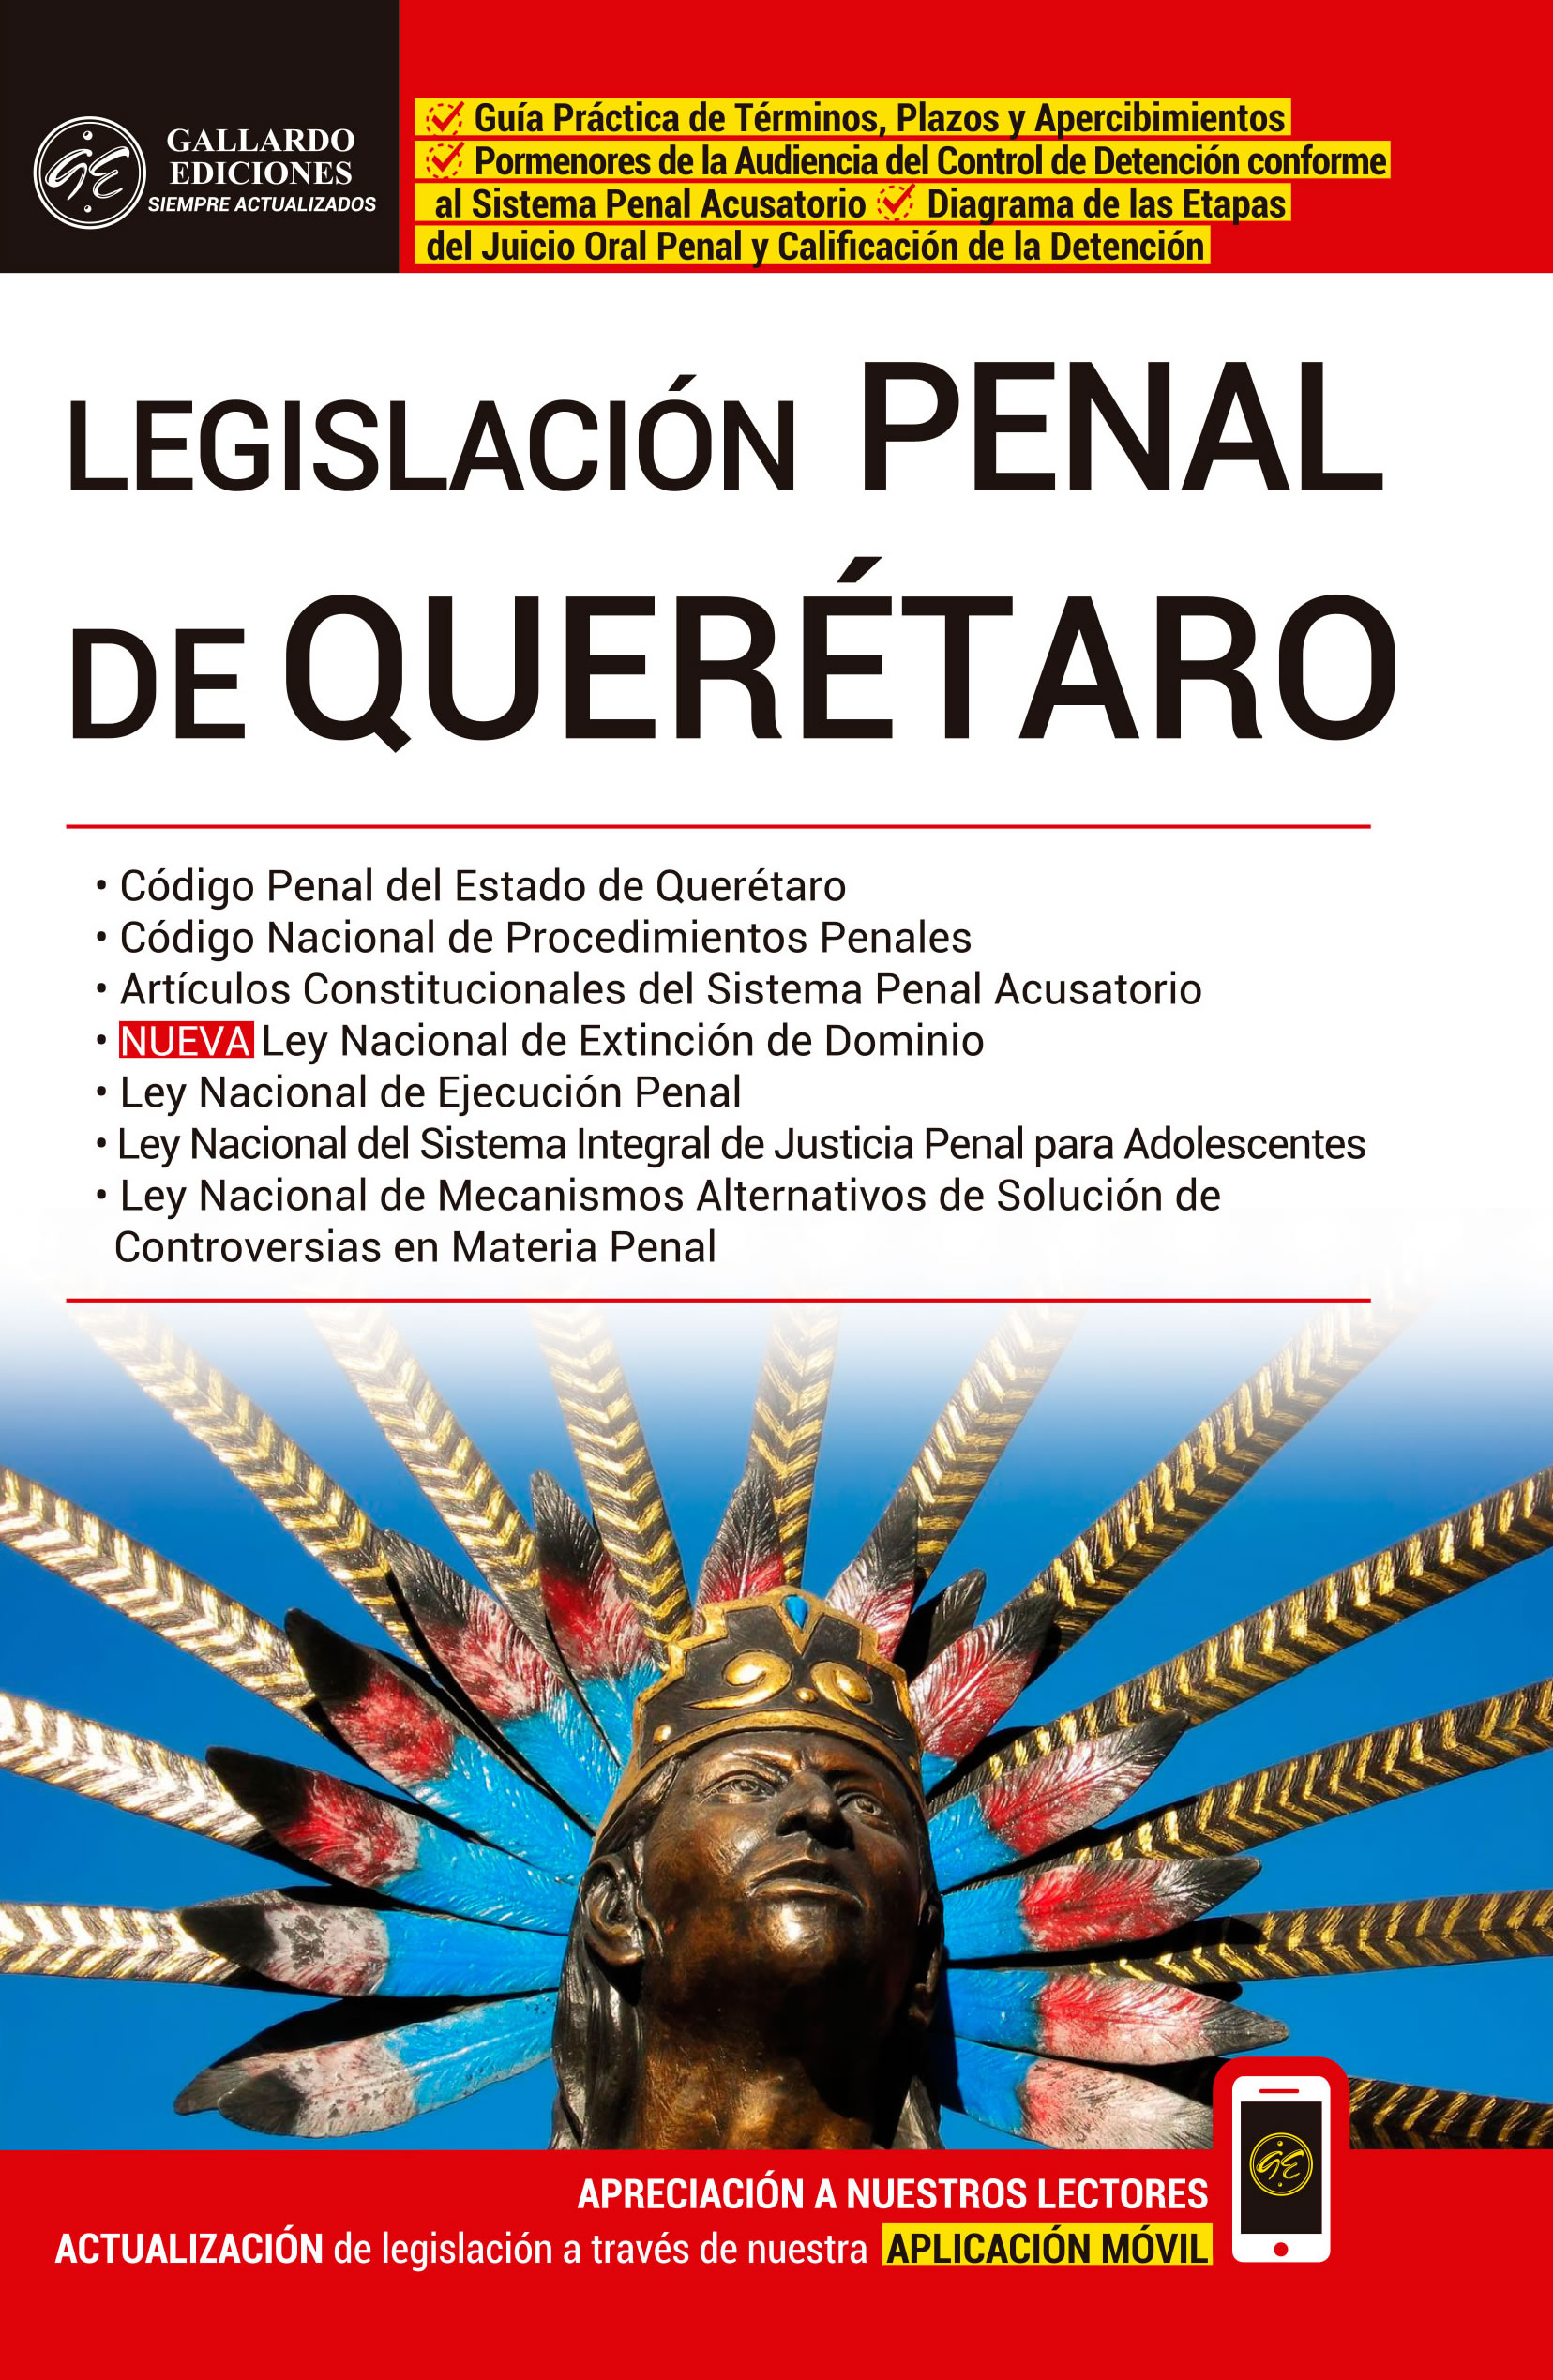 Legislación Penal de Querétaro 2019 Gallardo Ediciones